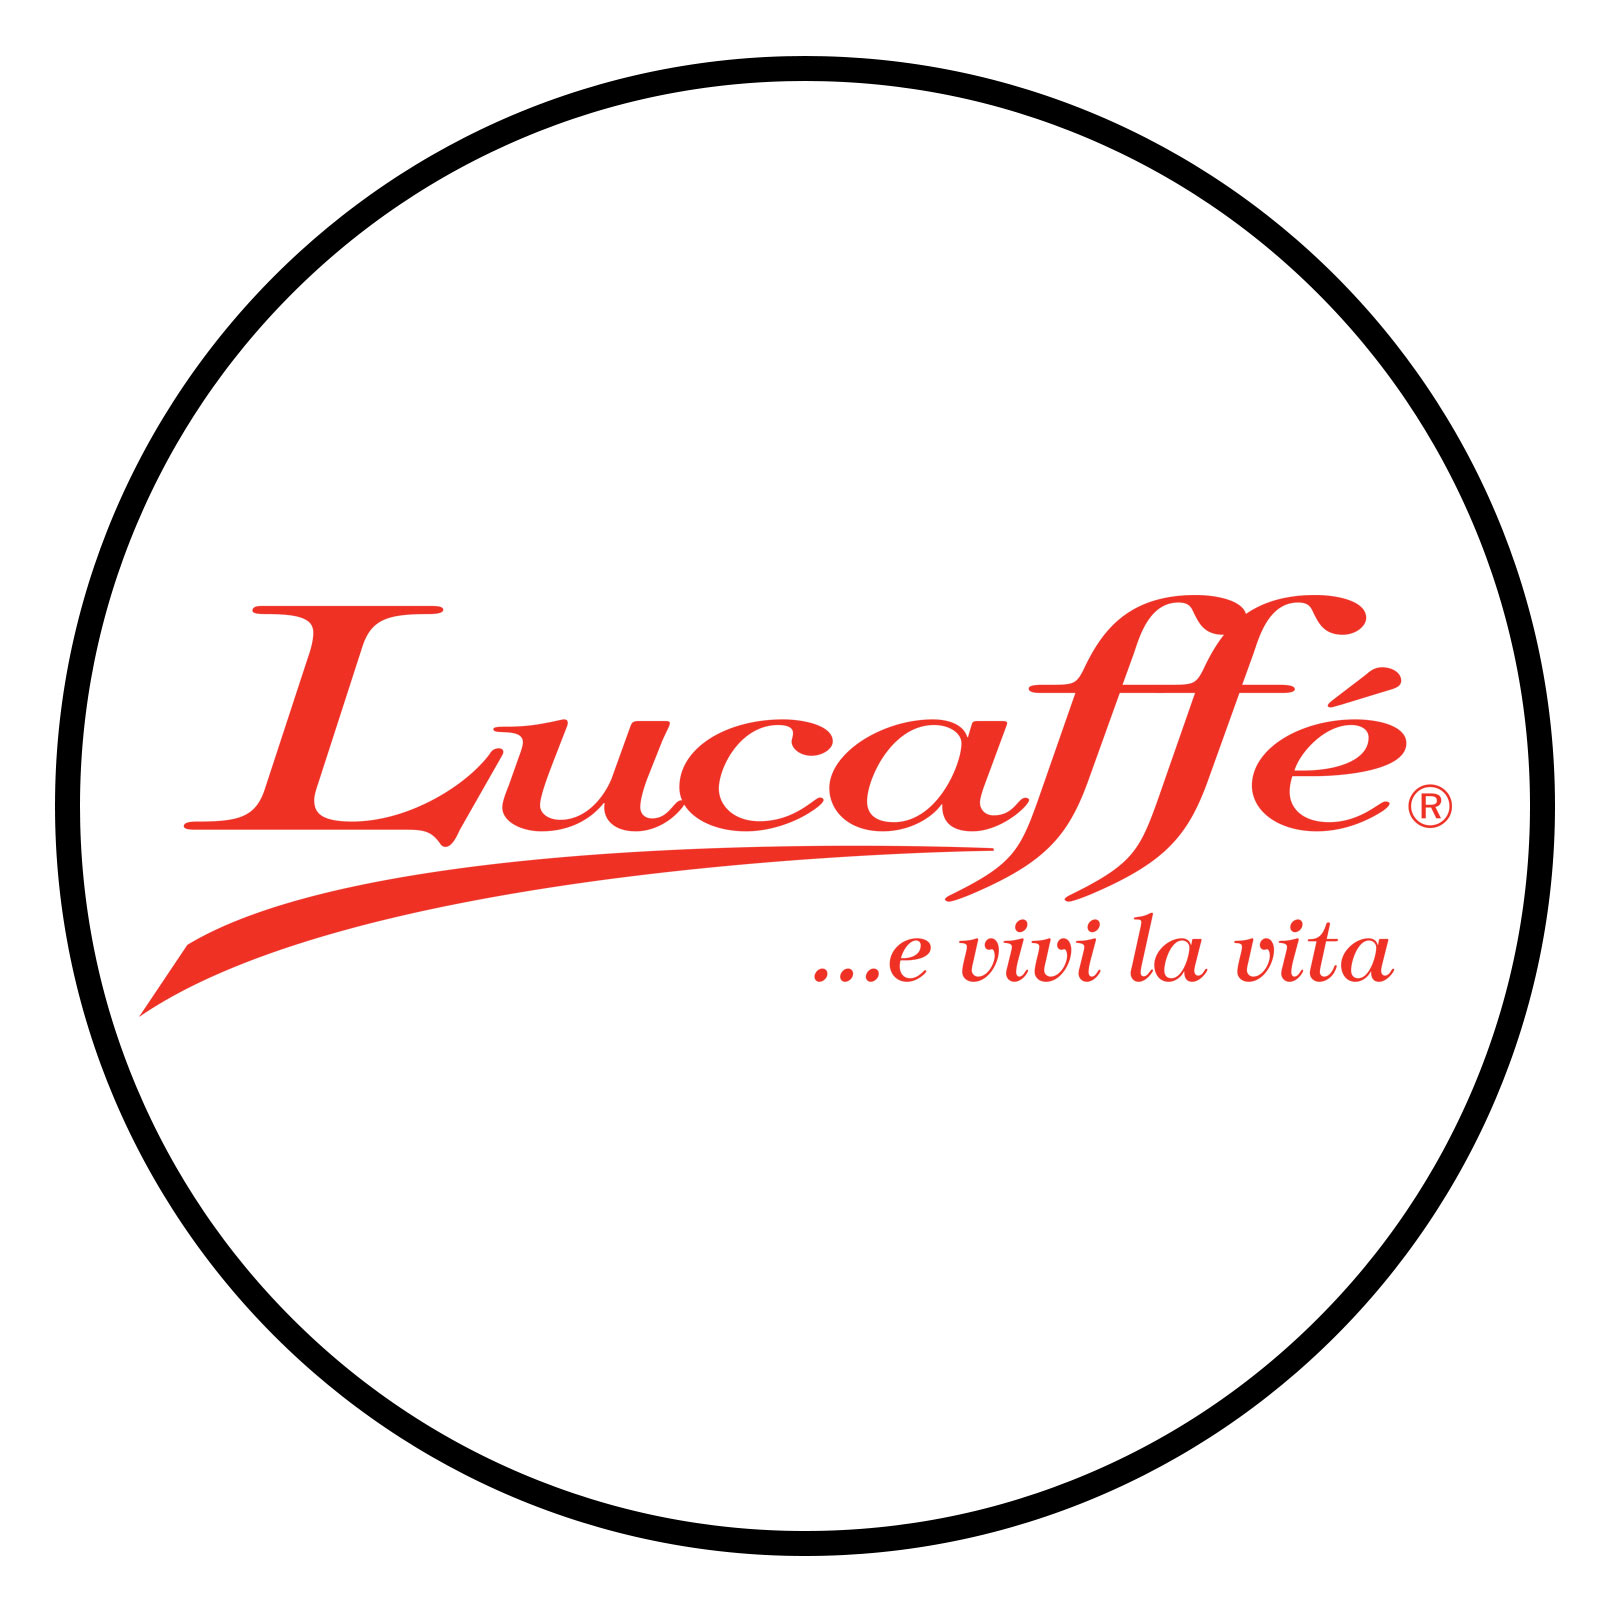 Lucaffé